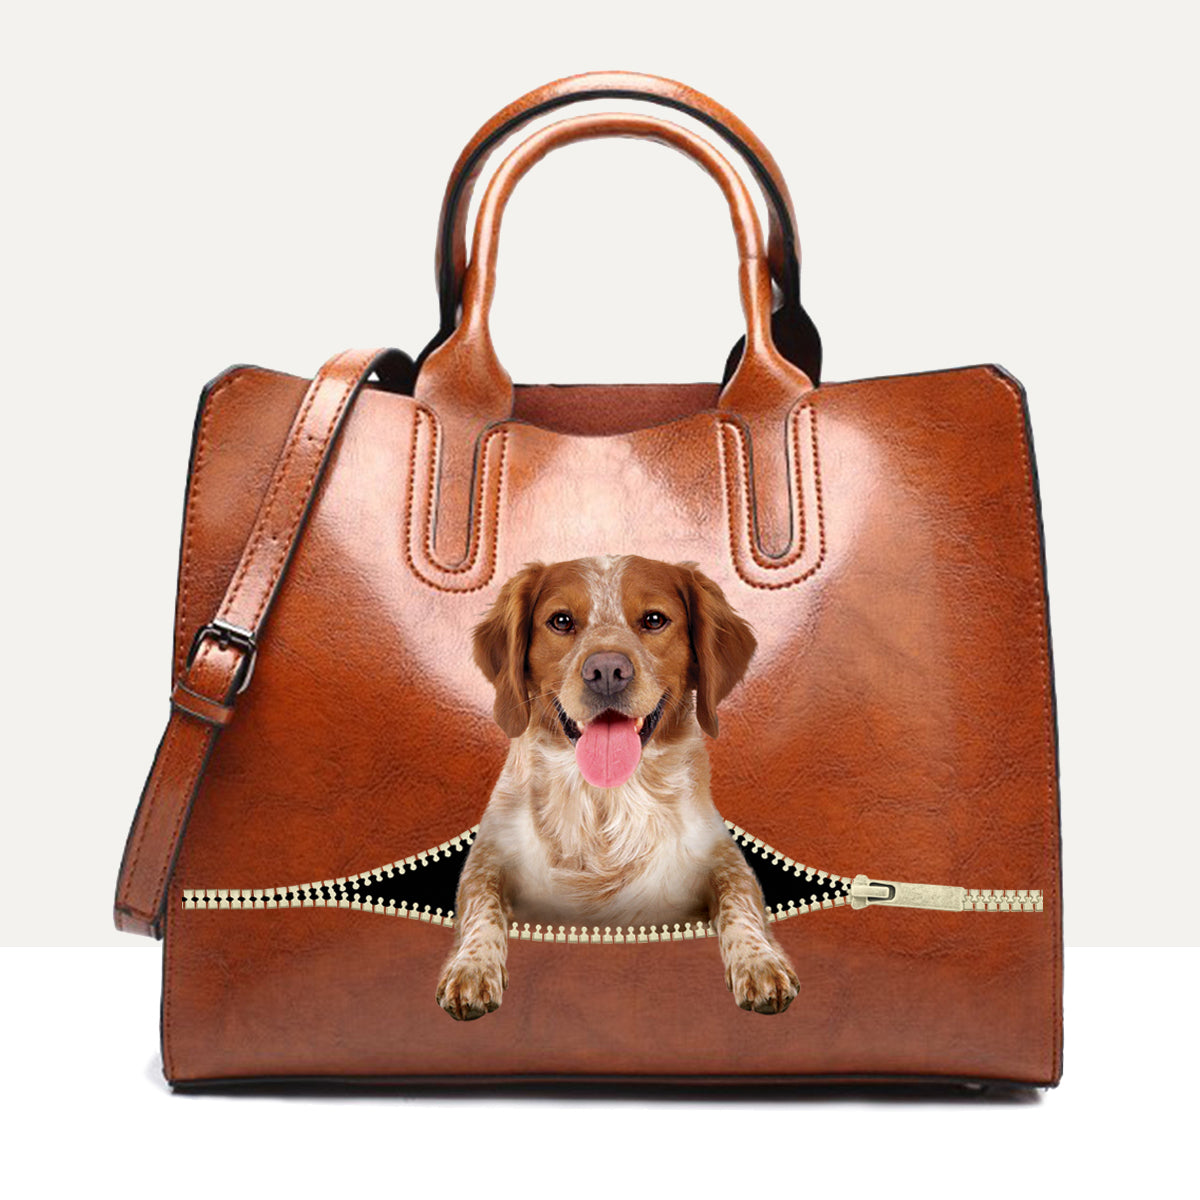 Ihr bester Begleiter – Brittany Spaniel Luxus-Handtasche V1